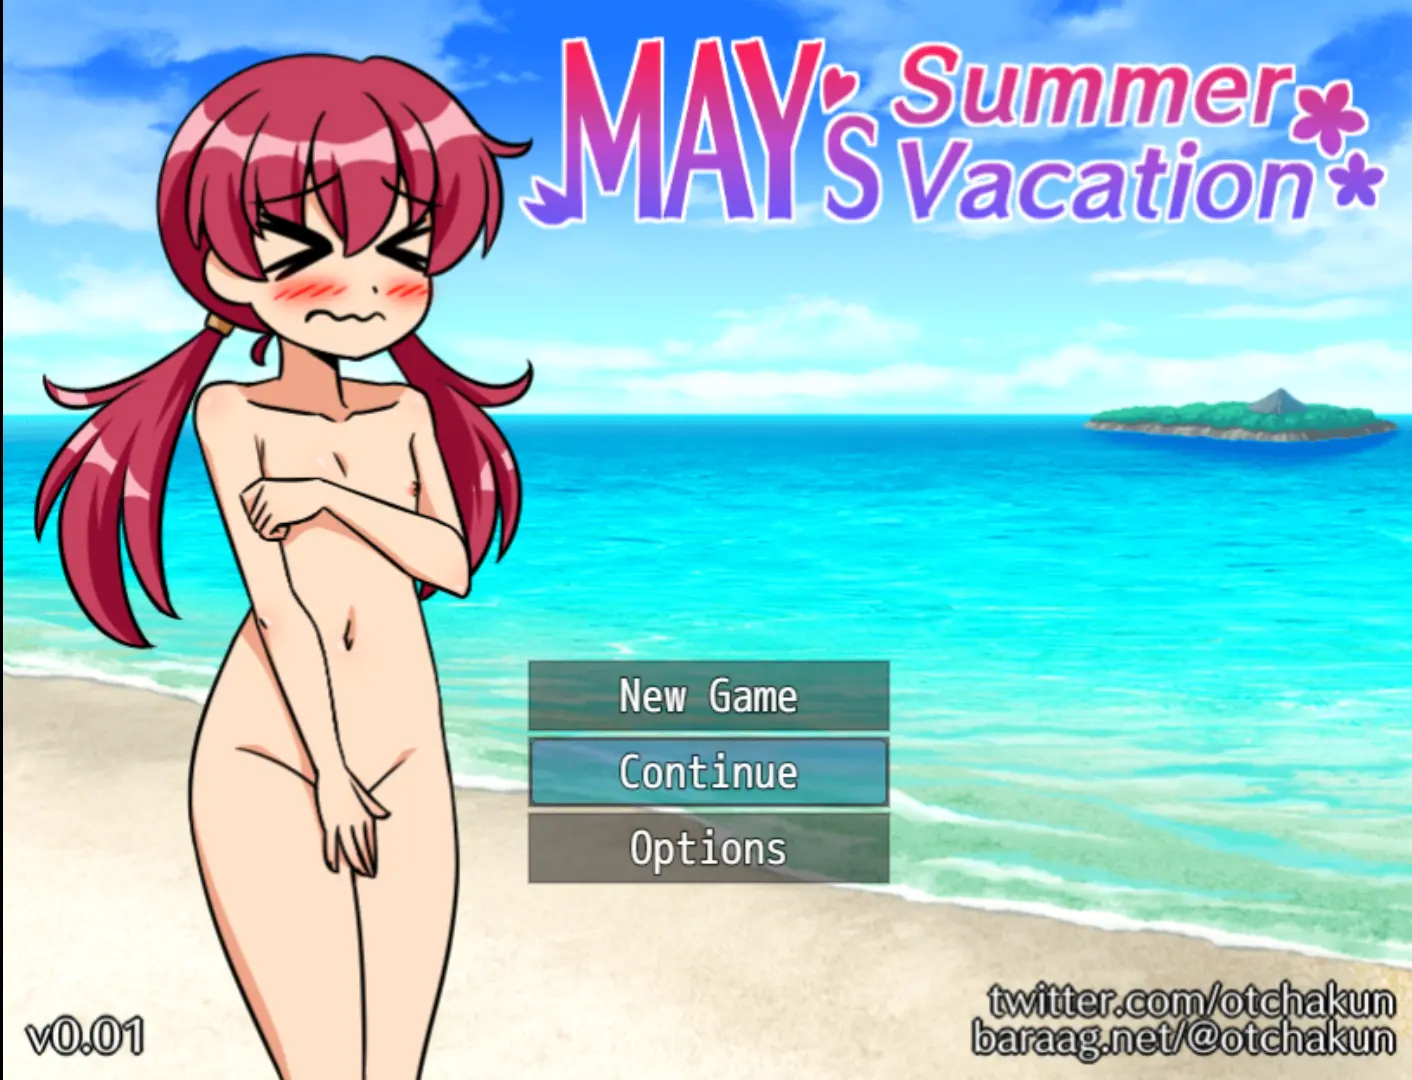 May's Summer Vacation main image